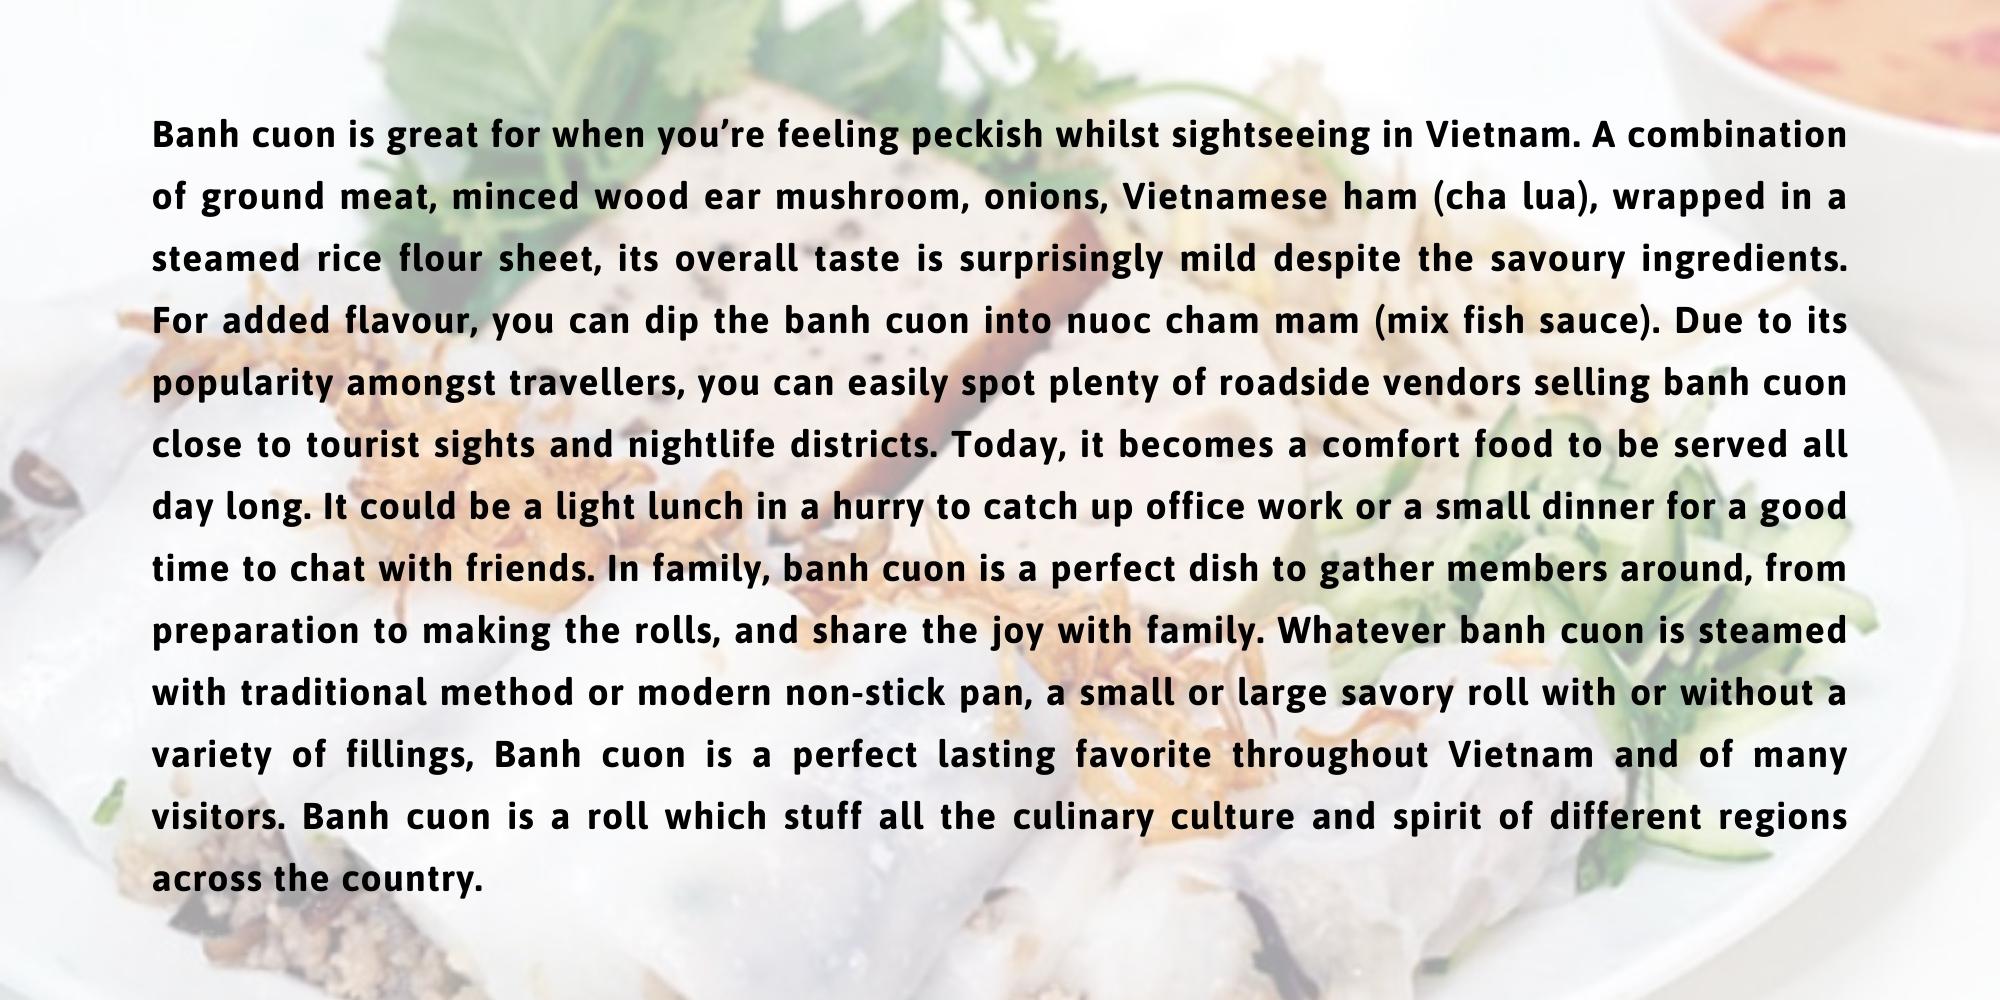 Bài giới thiệu đất nước Việt Nam bằng tiếng Anh qua món ăn